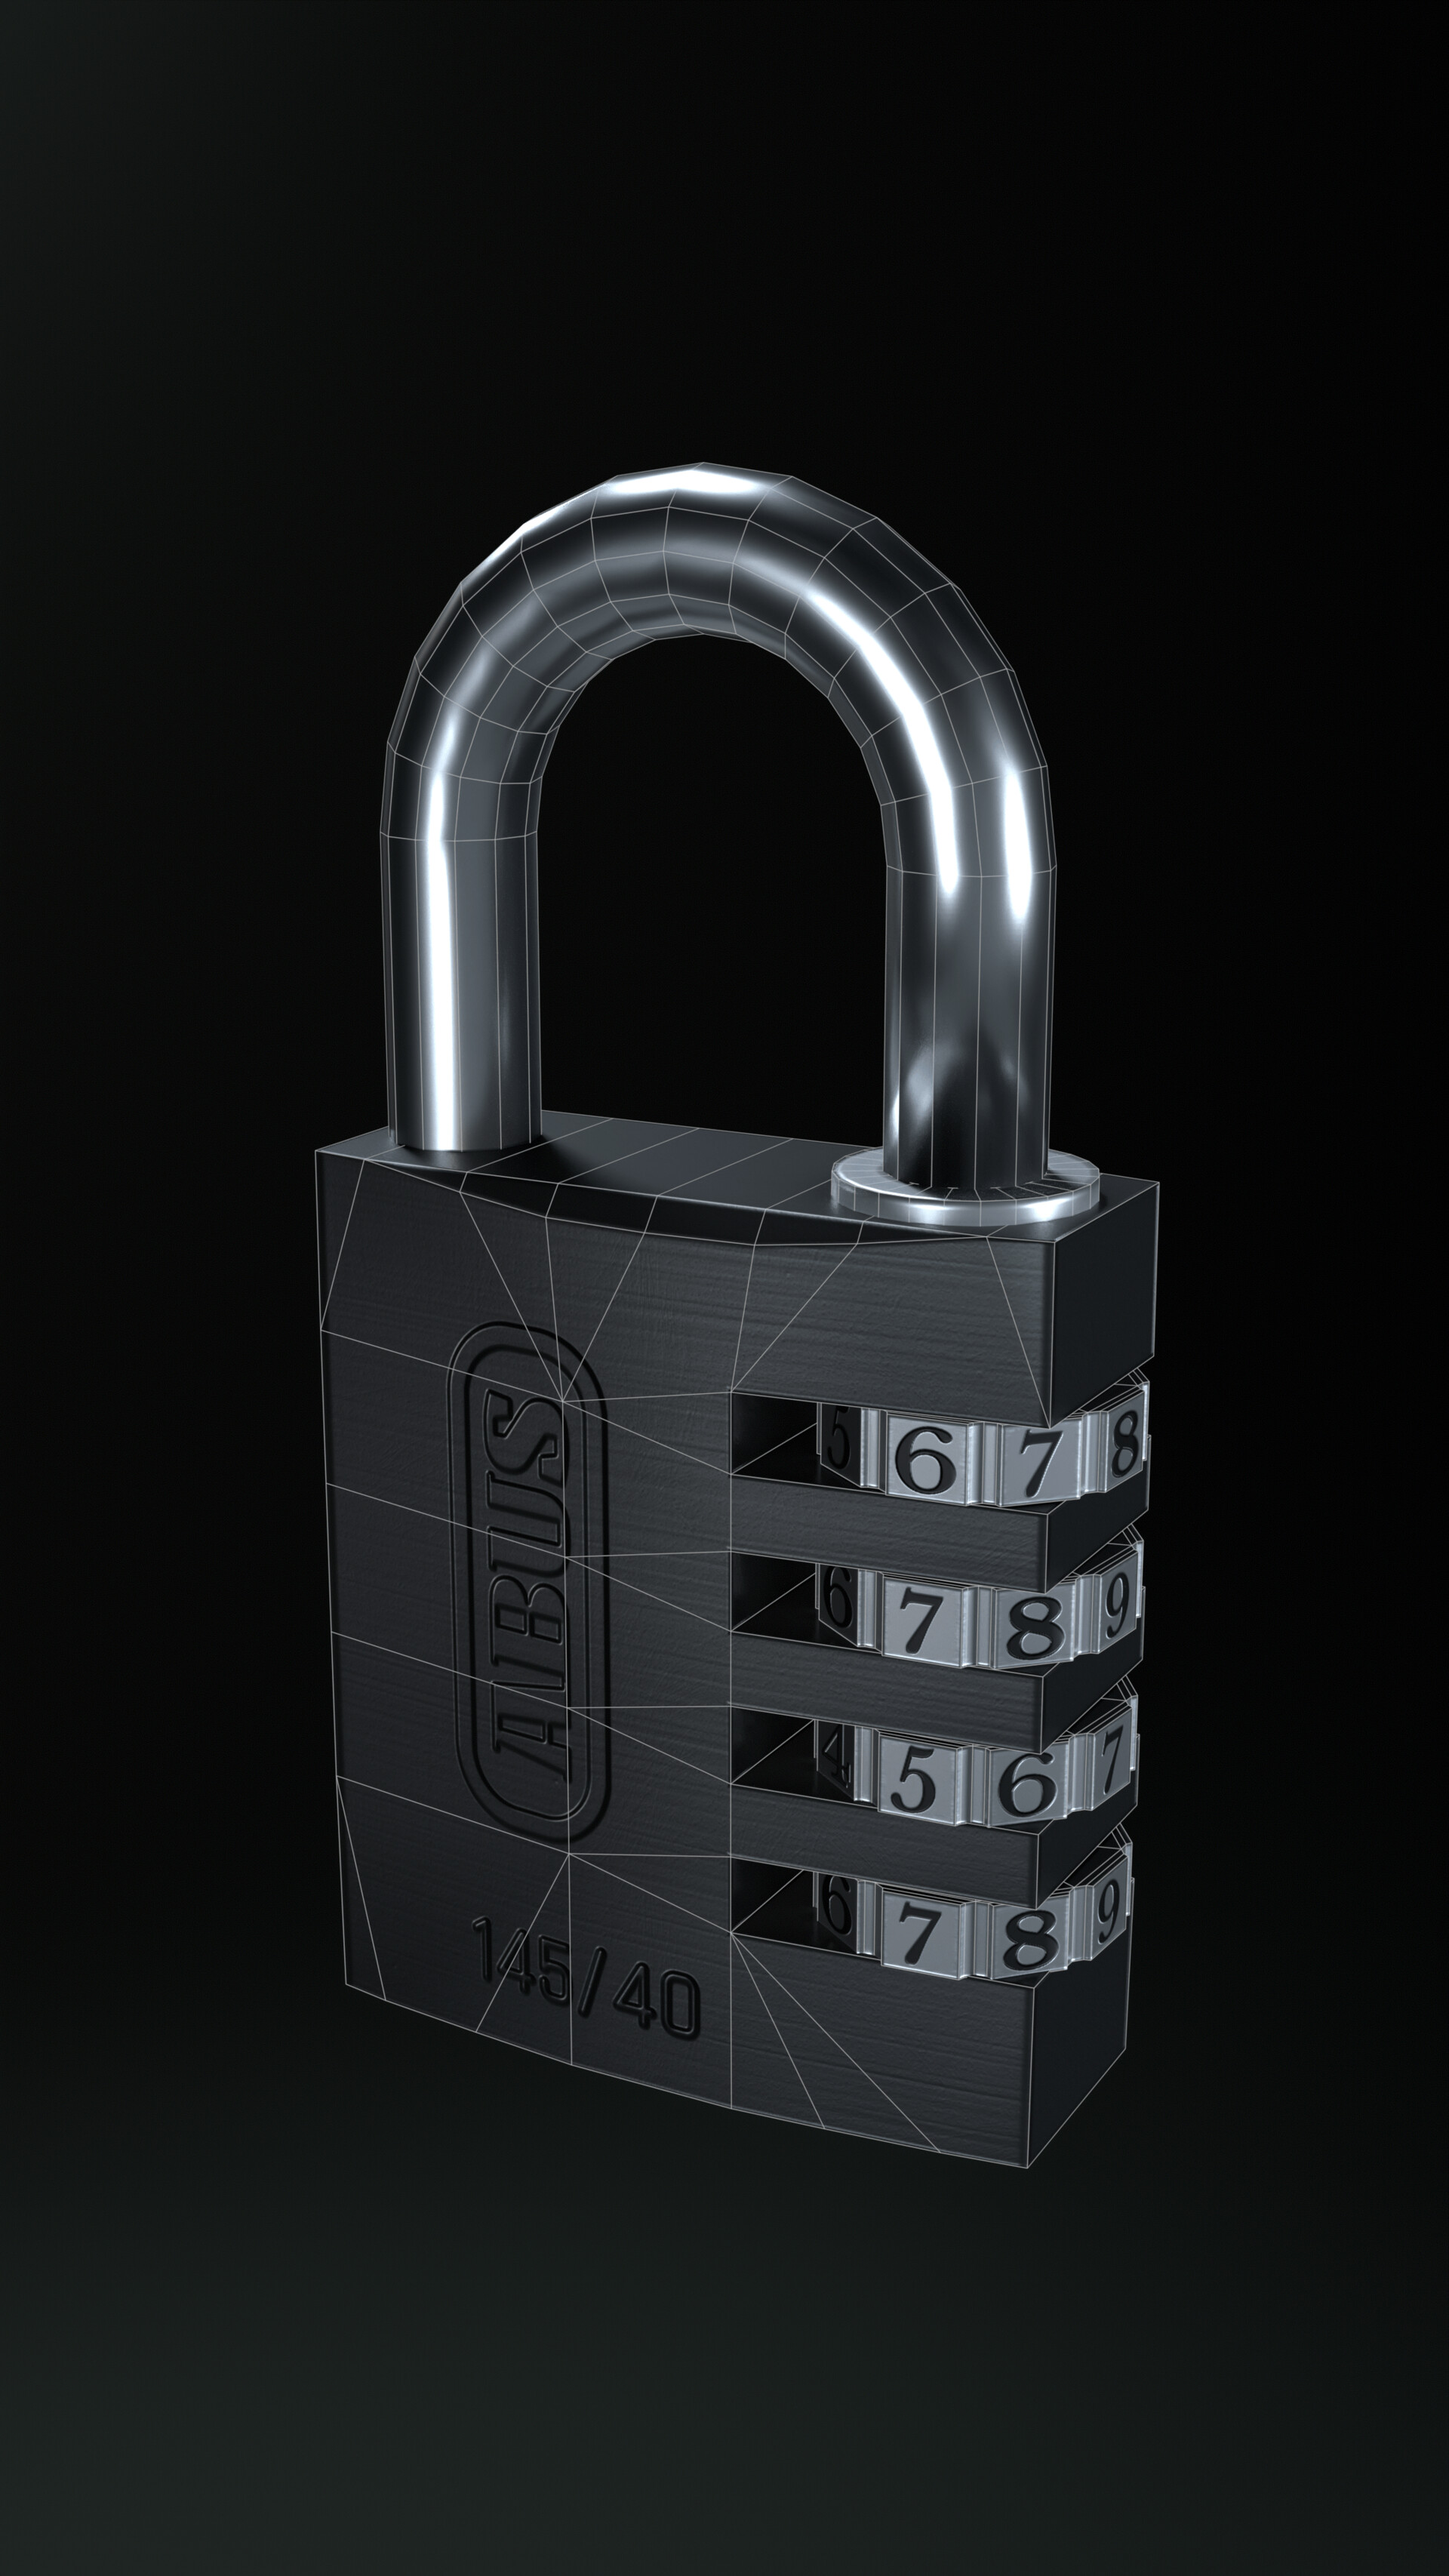 JuNie - Key hole locks